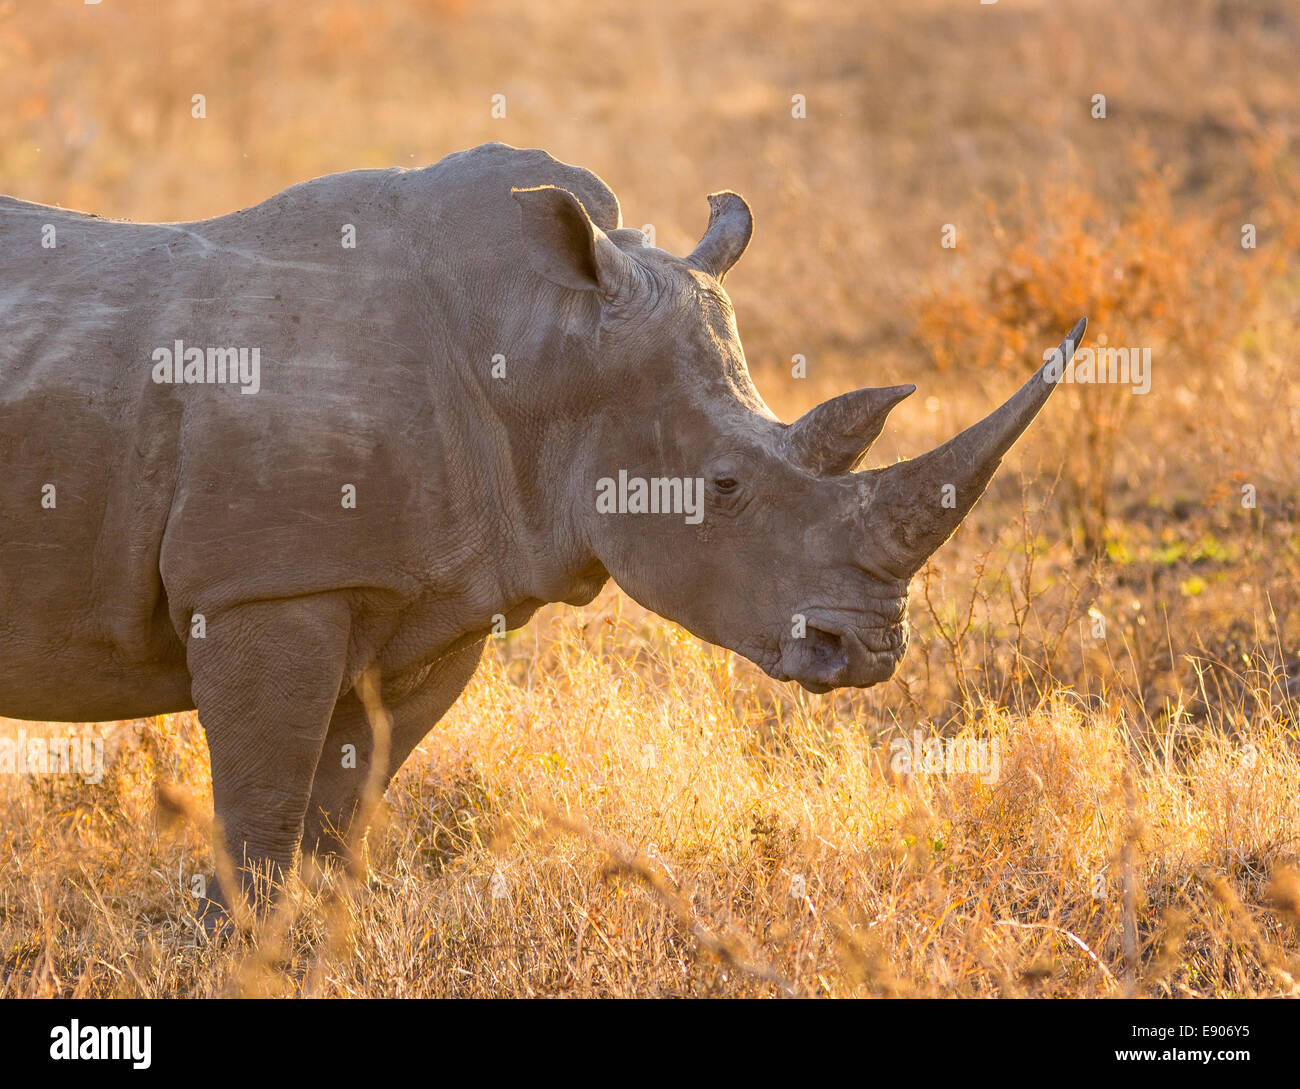 Parco Nazionale di Kruger, SUD AFRICA - rinoceronte bianco con grandi corna Foto Stock